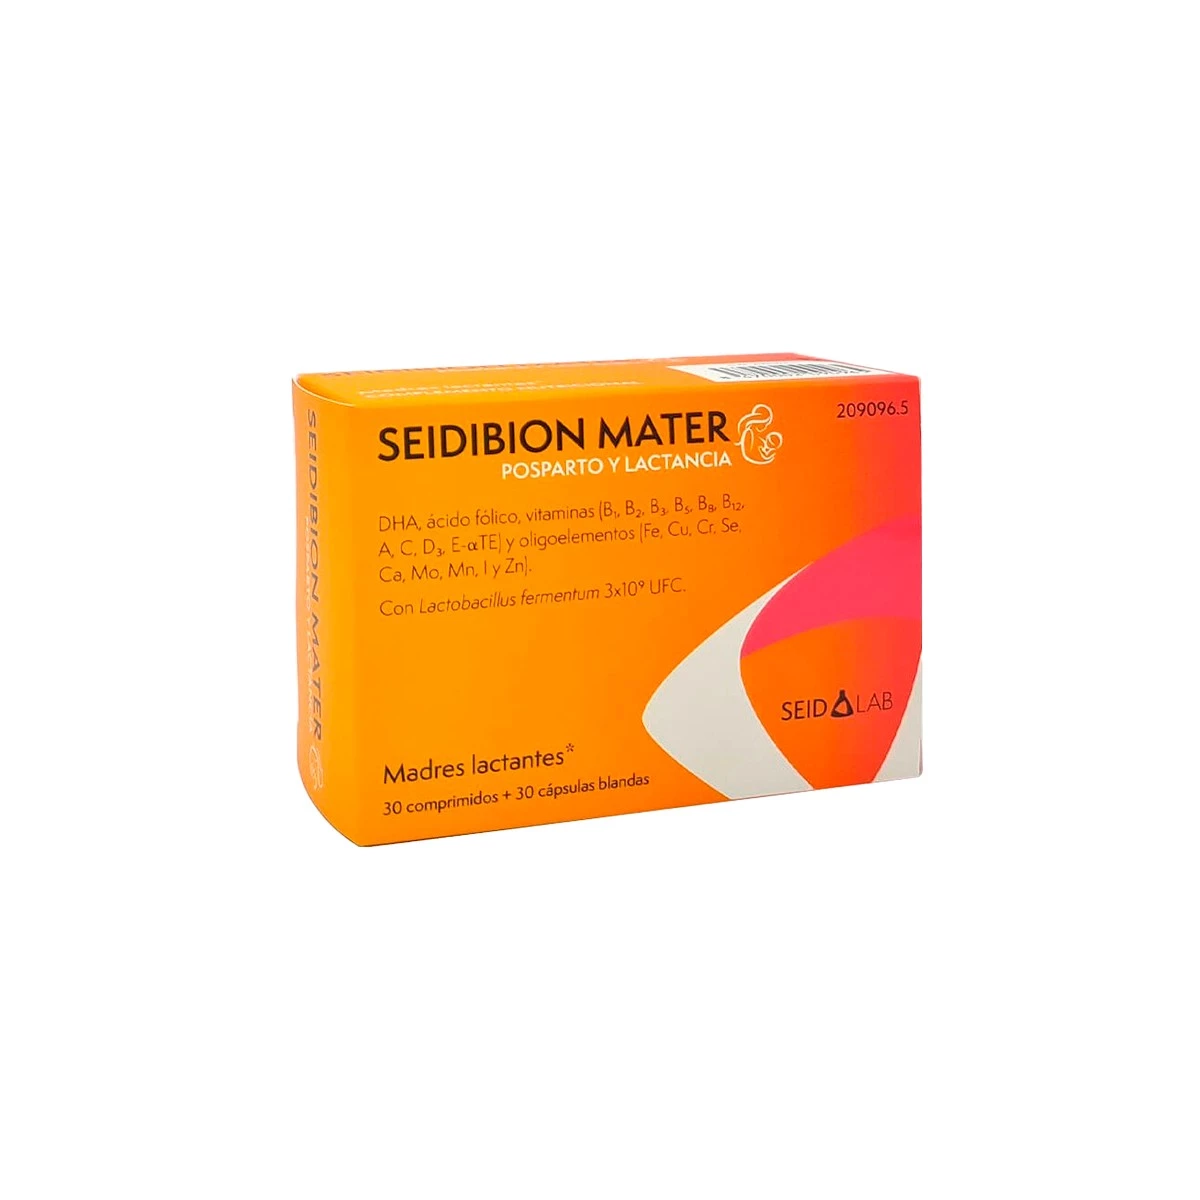 Seidibion Mater 30 comprimidos + 30 cápsulas blandas